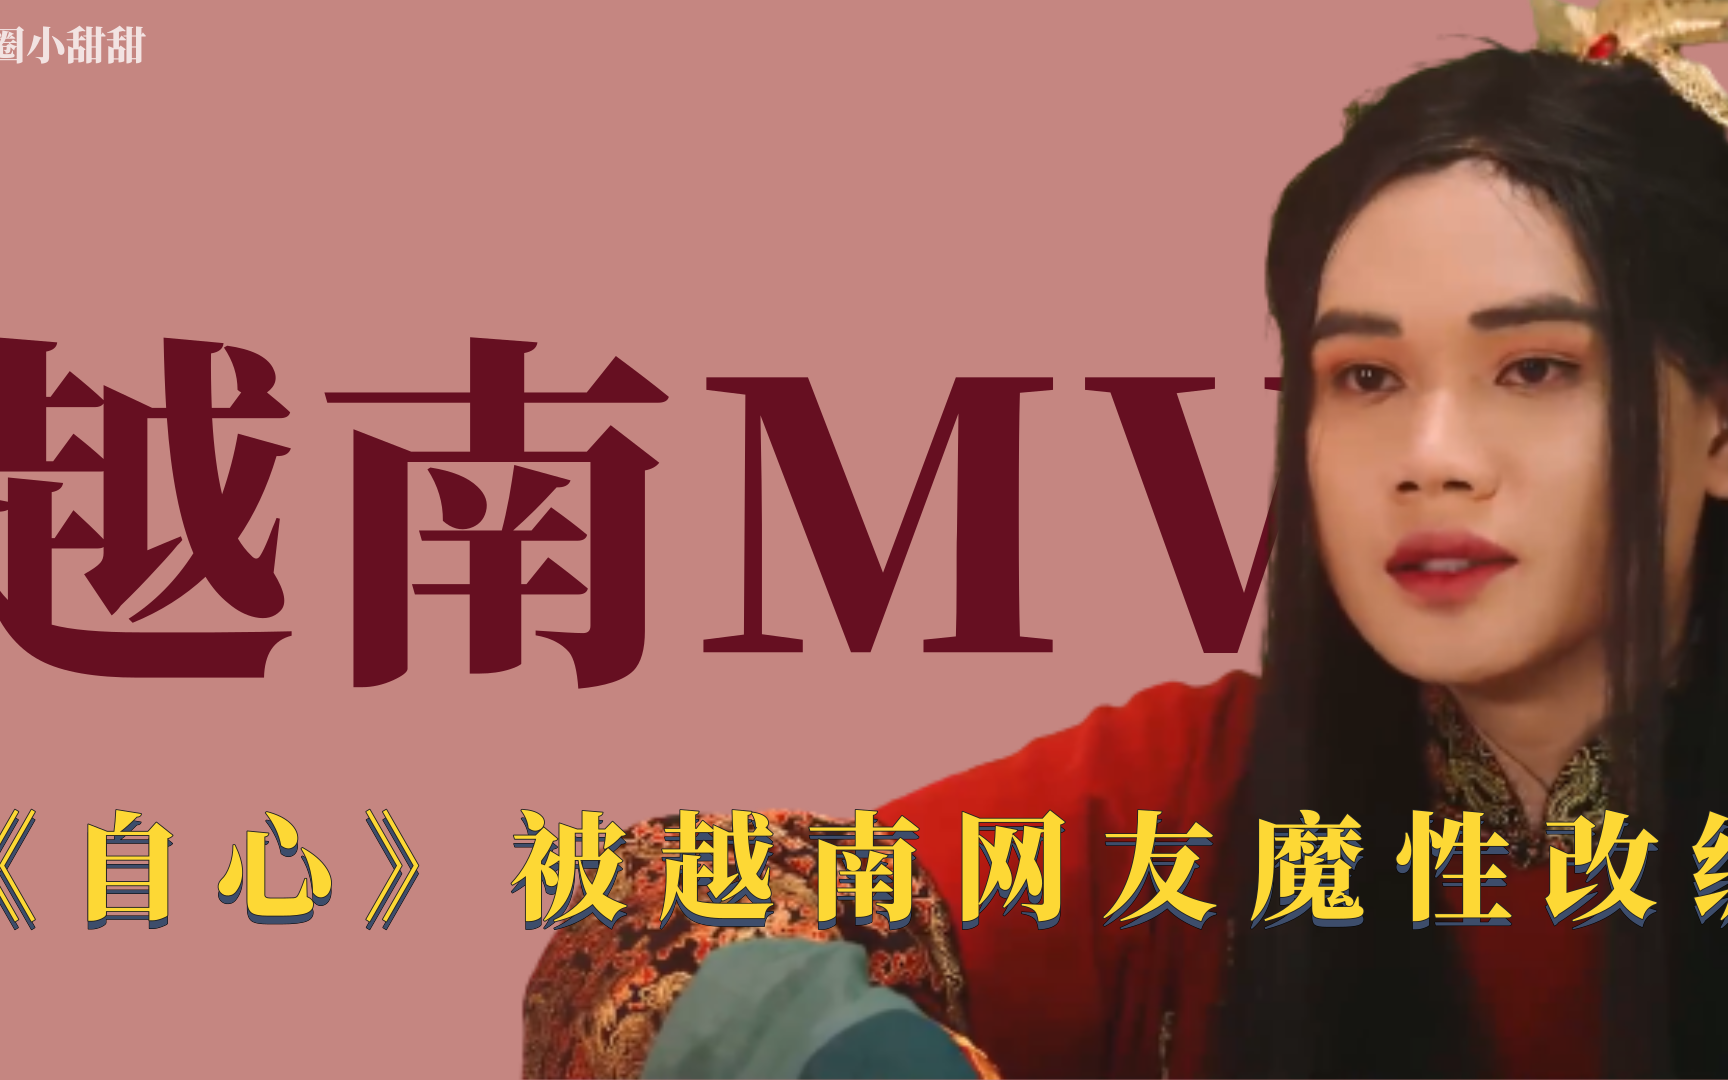 越南mv自心被越南网友爆笑改编王与王后竟因为美甲撕